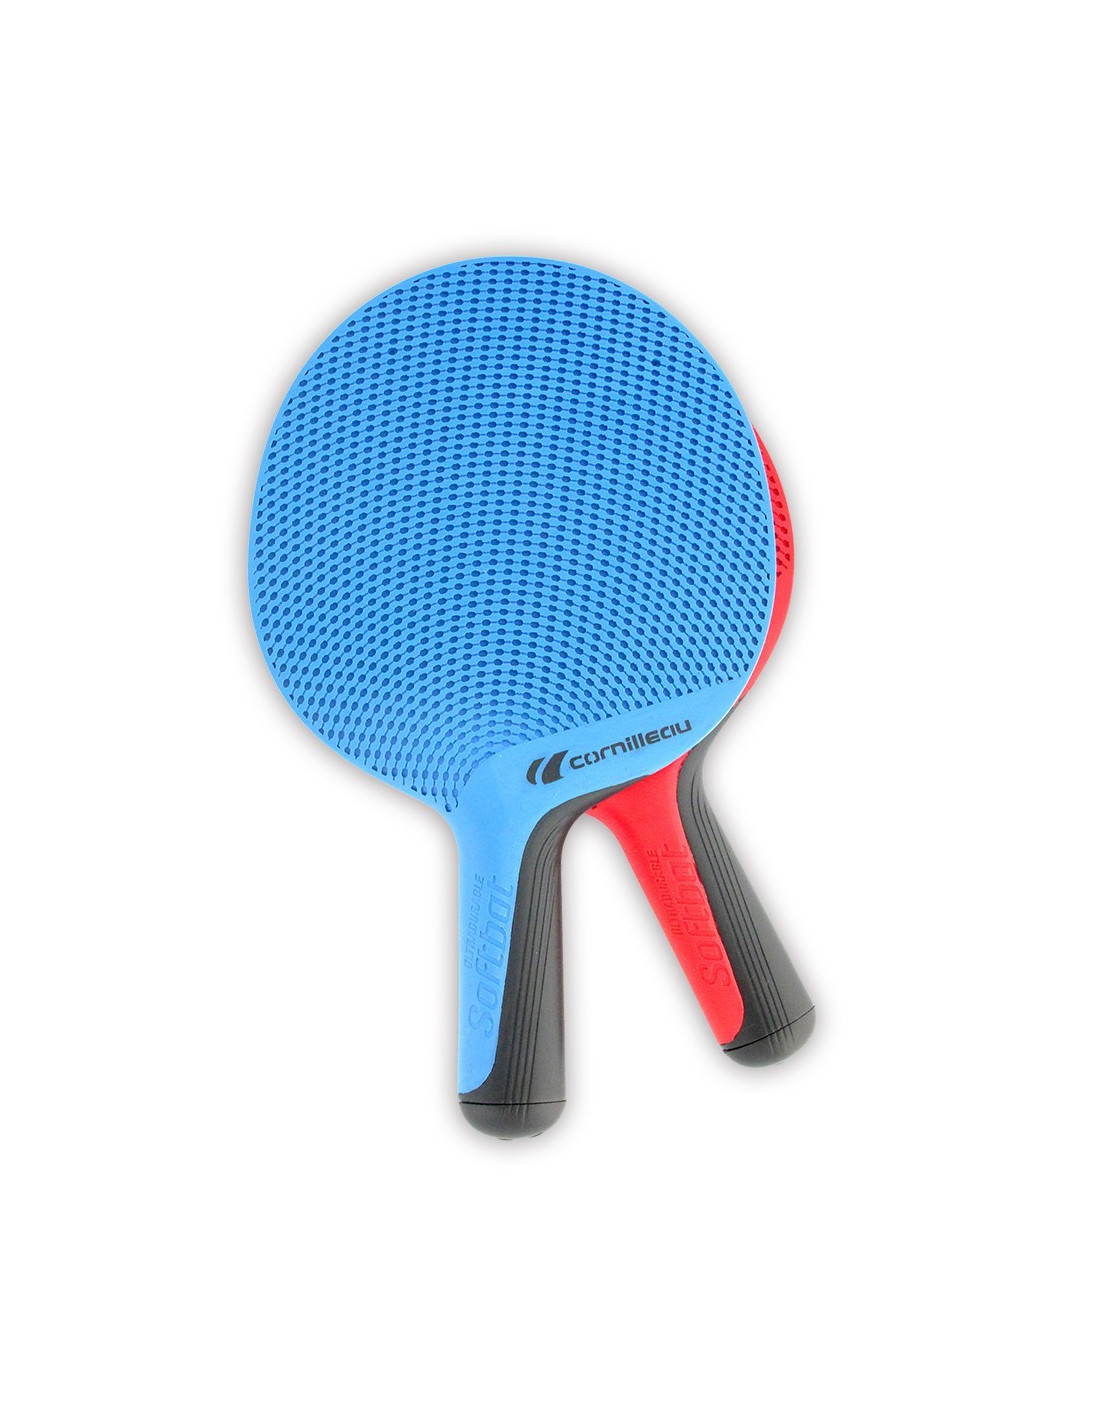 Raquette de ping-pong : comment bien choisir sa housse ?